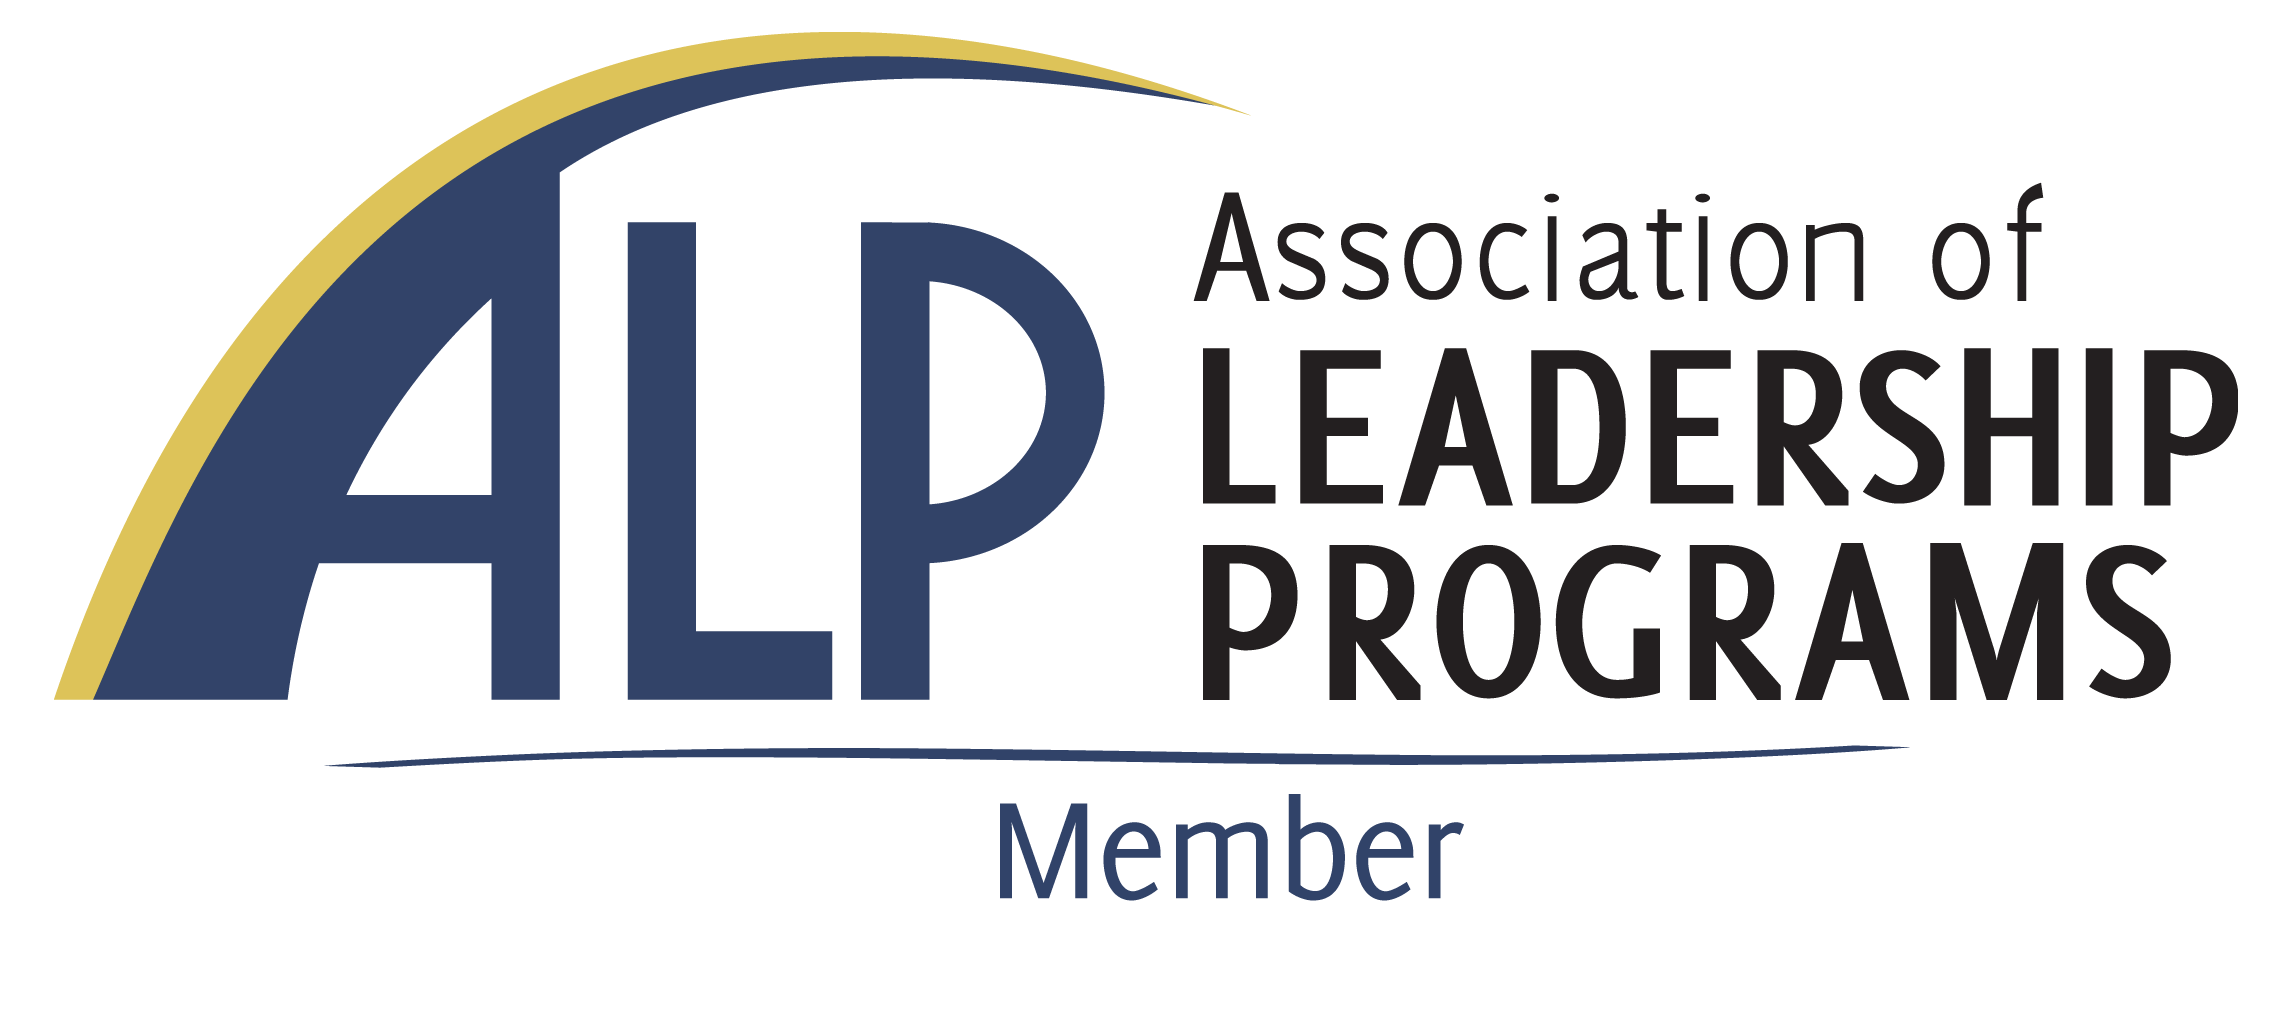 Association of Leadership Programs